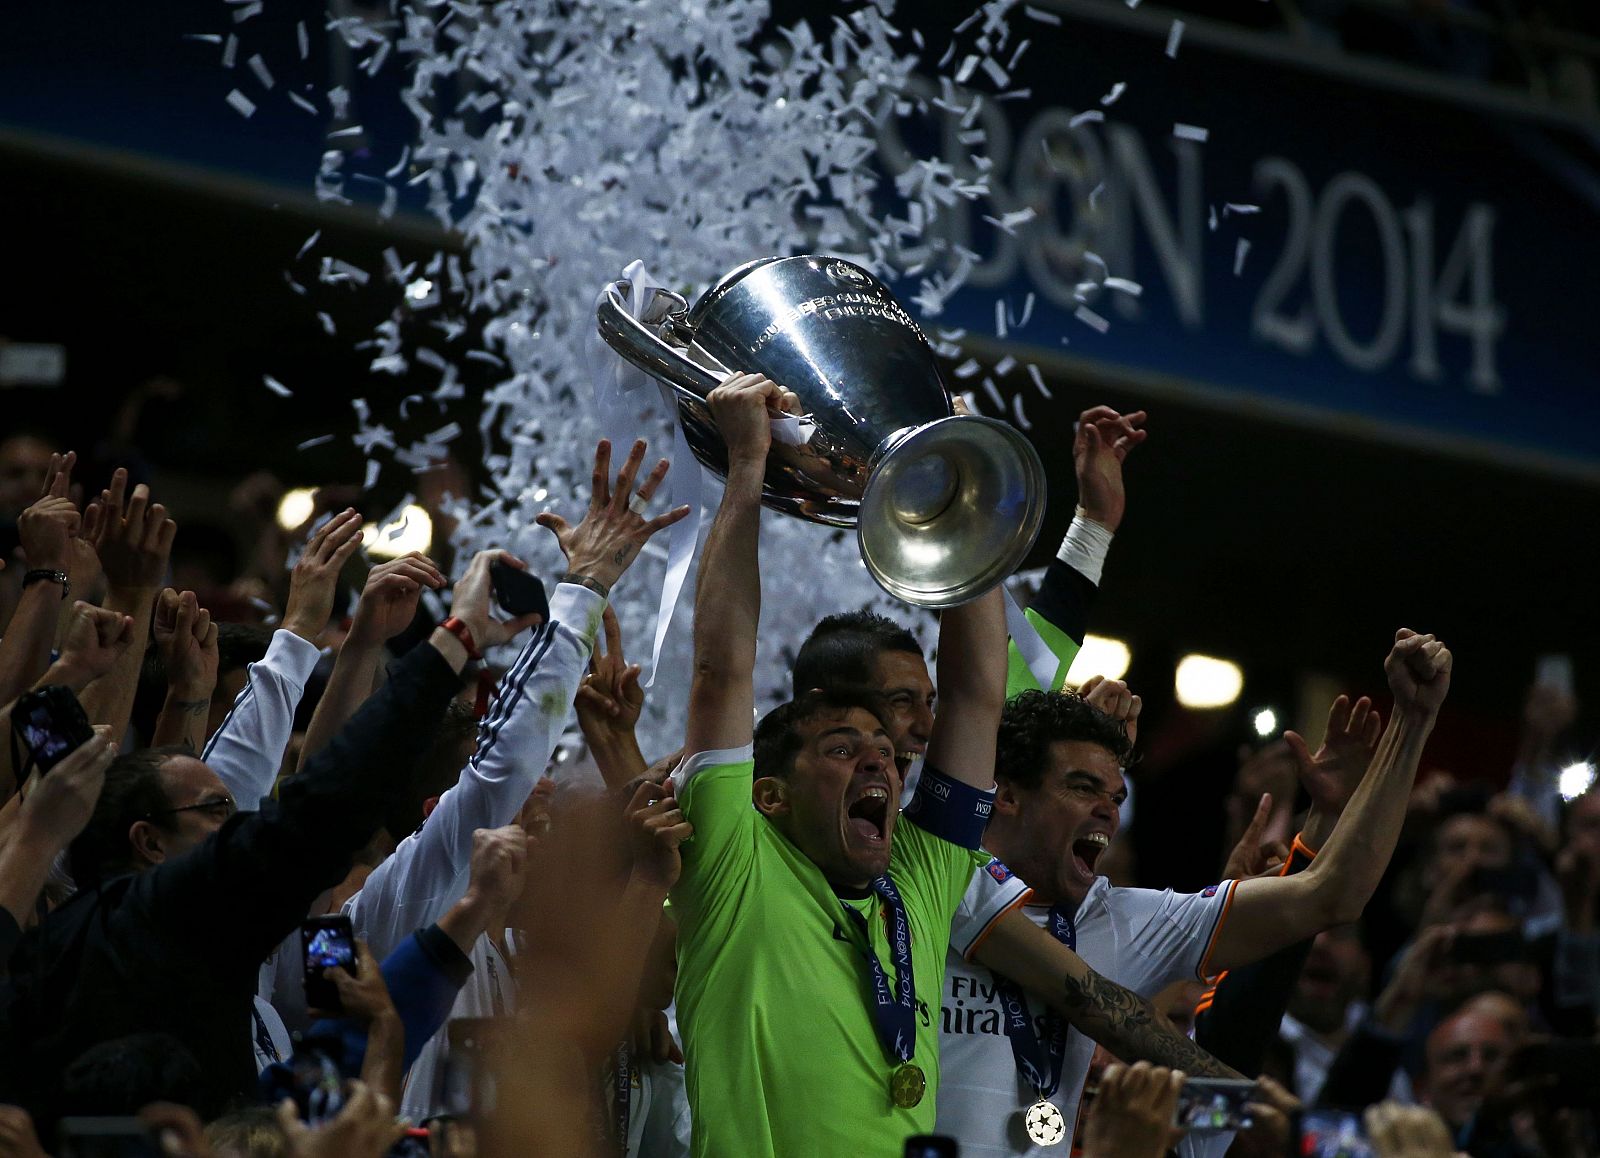 Iker Casillas, portero y capitán del Real Madrid, levanta "La Décima" Copa de Europa del equipo blanco tras el triunfo conseguido frente al Atlético de Madrid por 4-1